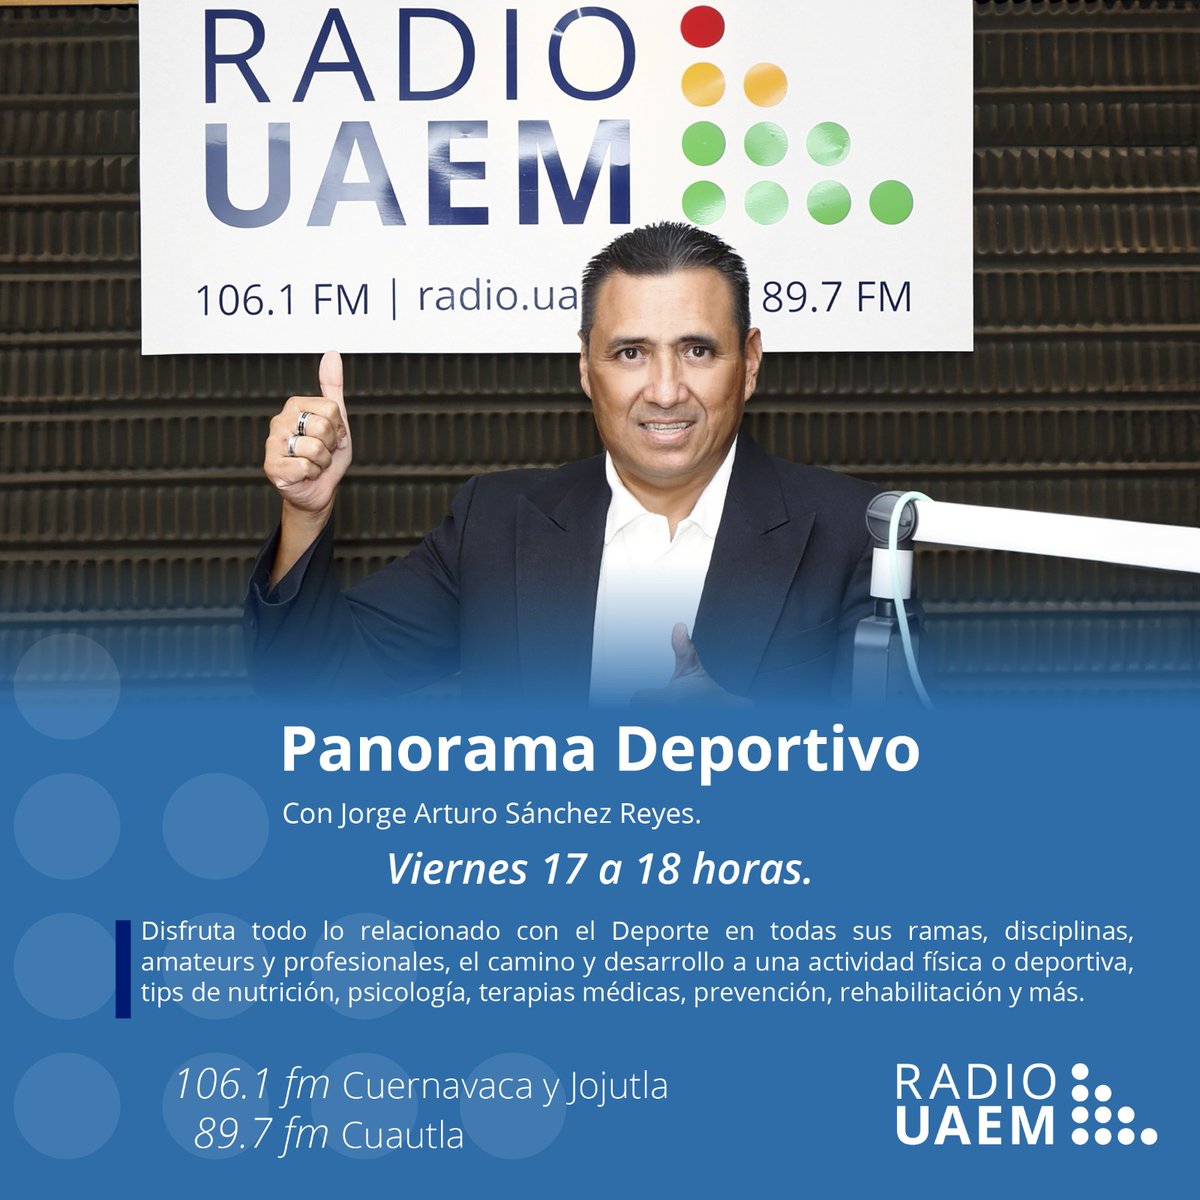 No te pierdas el estreno del programa 'Panorama Deportivo' en @radiouaem hoy a partir de las 17 horas con Jorge Arturo Sánchez Reyes en las frecuencias 106.1 en Cuernavaca y Jojutla, y 89.7 en Cuautla | Visita la página radio.uaem.mx | #SomosRadioPúblicaUniversitaria 📻